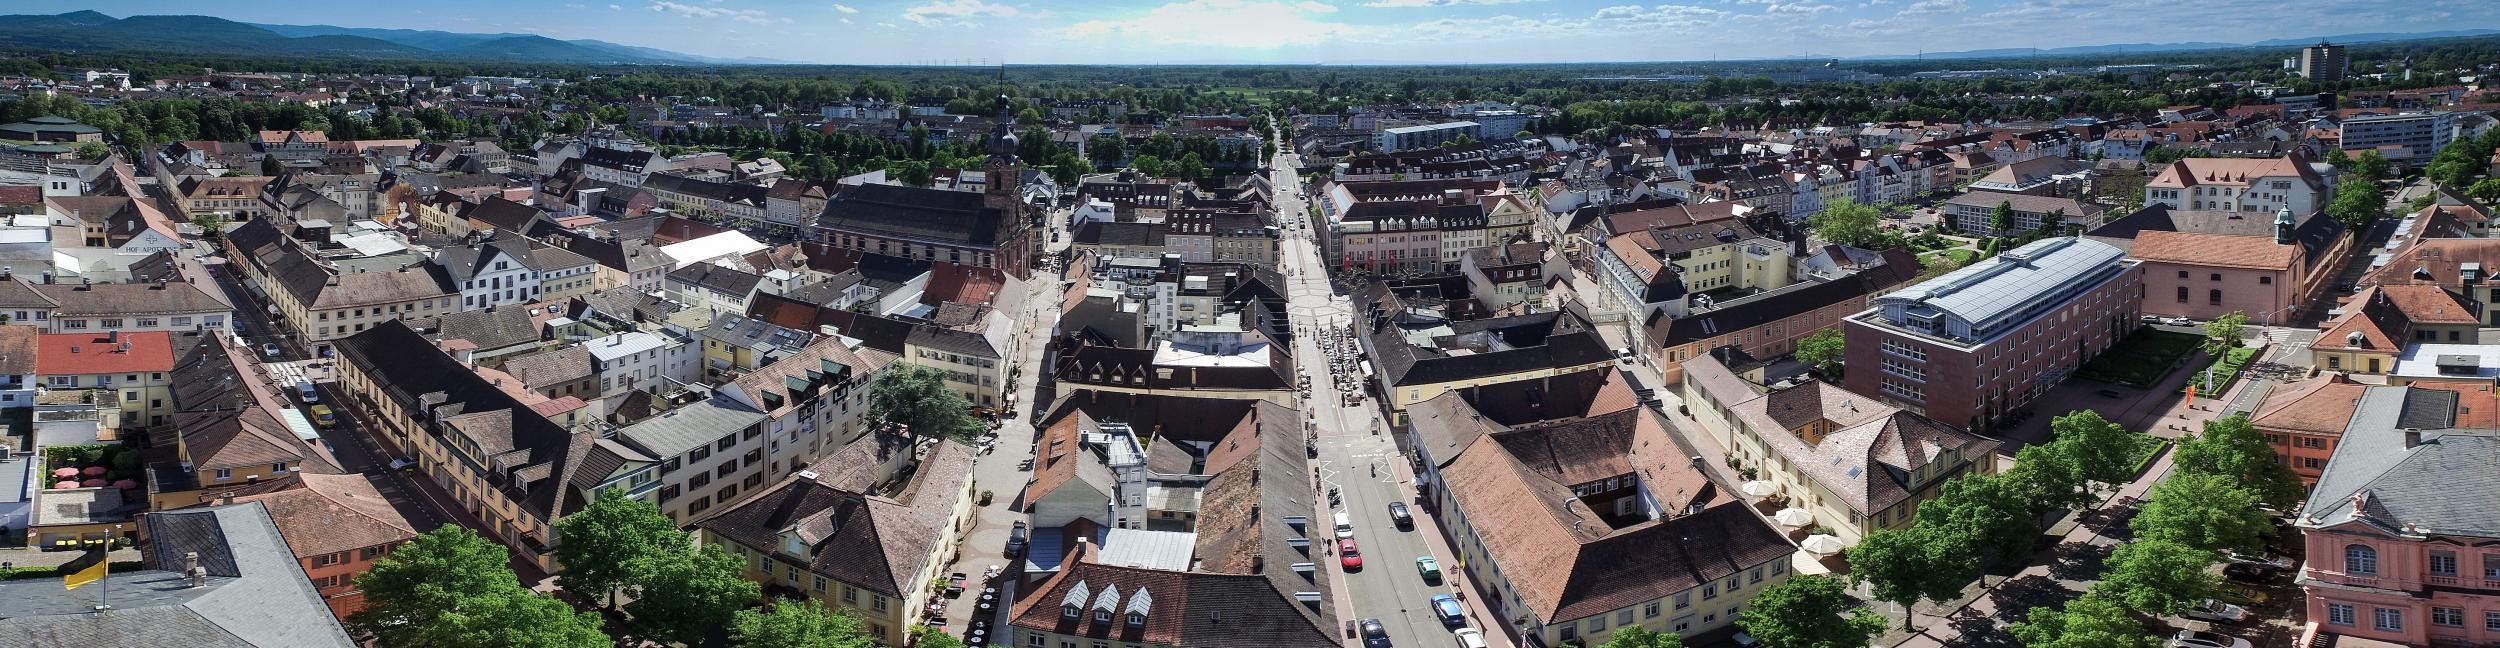 Une vue aérienne montre le centre-ville de Rastatt vu d'en haut